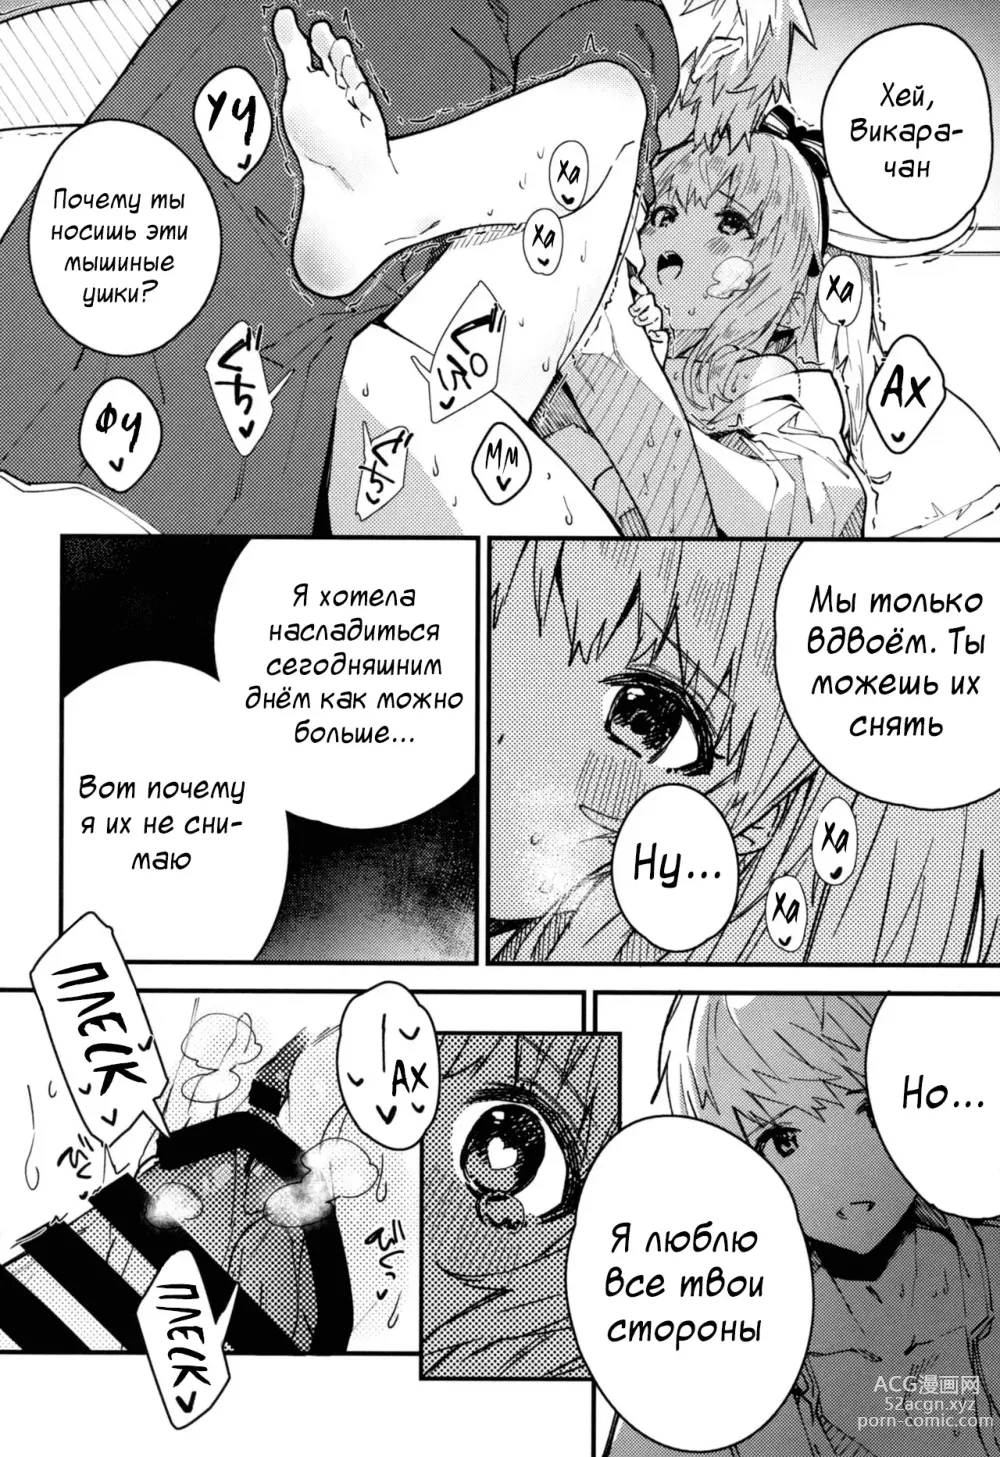 Page 15 of doujinshi Книга о том, как миловаться с Викарой-чан - Глава 4